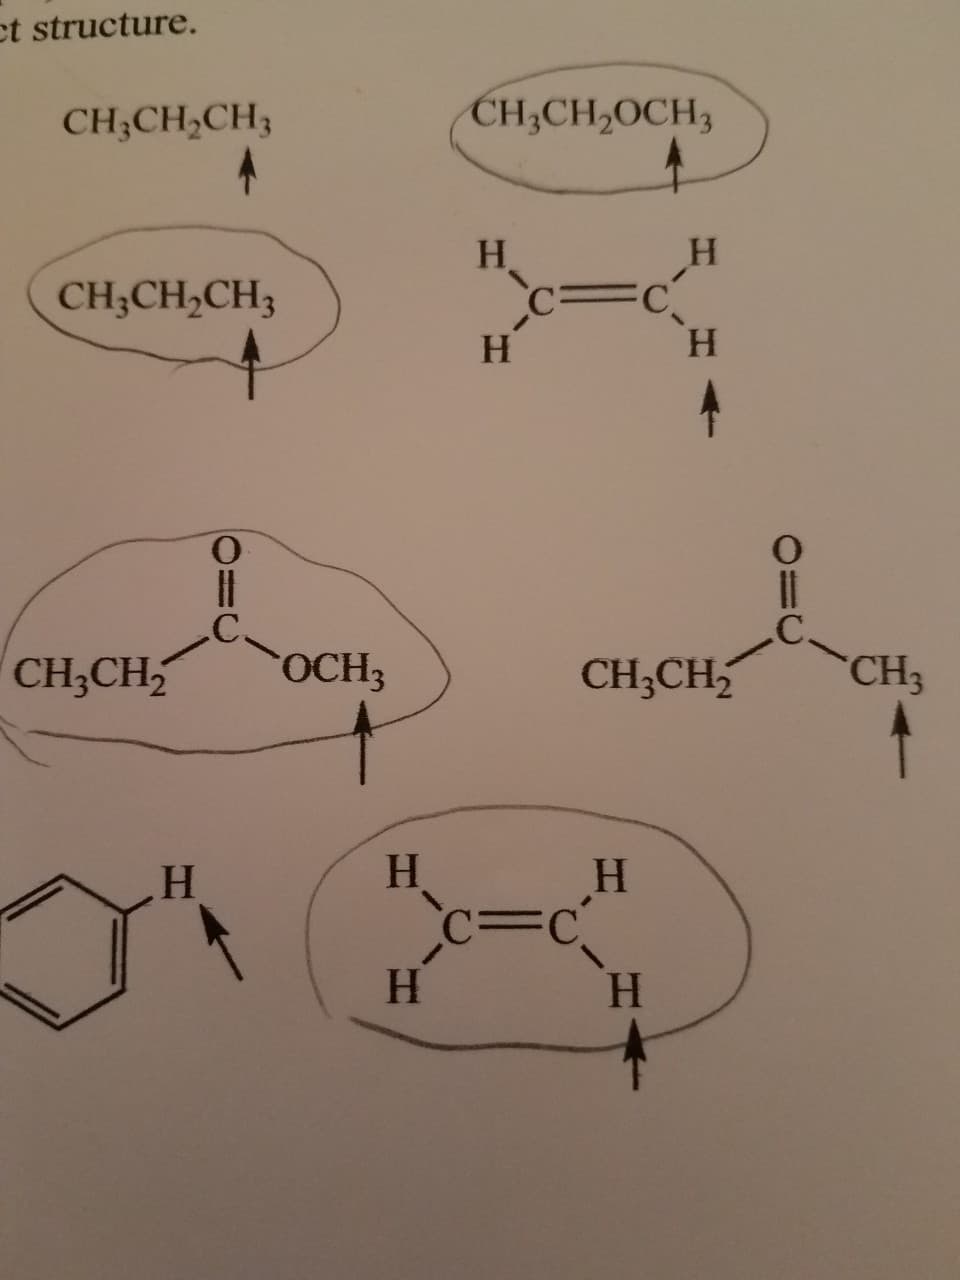 ct structure.
CH;CH,CH3
CH;CH,OCH3
H.
CH;CH,CH3
H
CH;CH
OCH3
CH;CH
CH3
C=C
H.
H.
